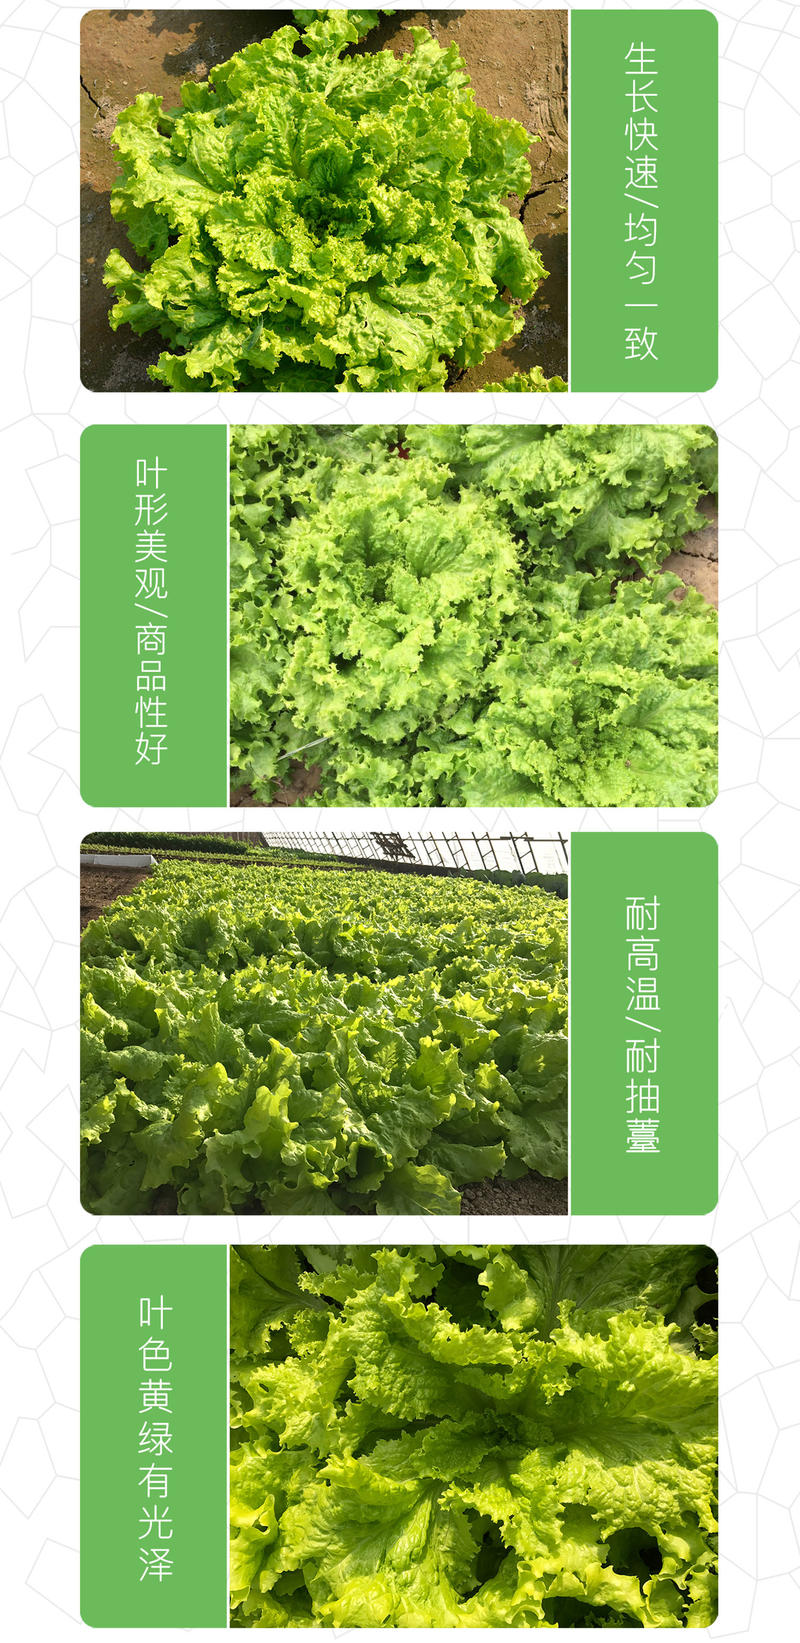 中科茂华蔬菜种子辛普森绿精英散叶生菜种子668反季